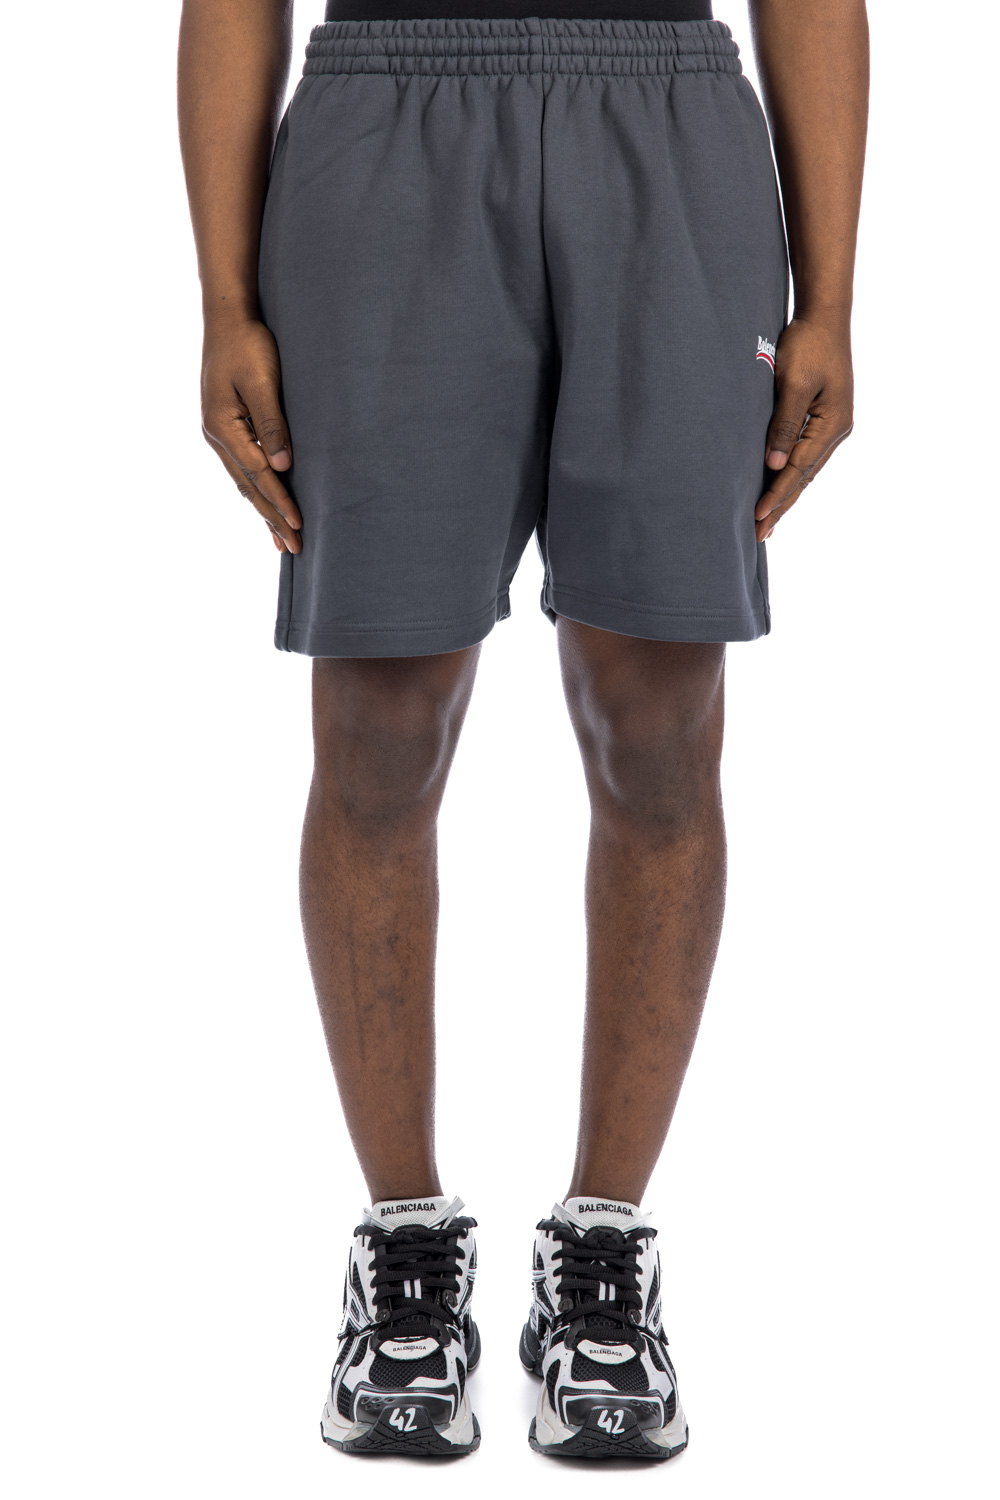 Balenciaga Sweat Shorts | Credomen